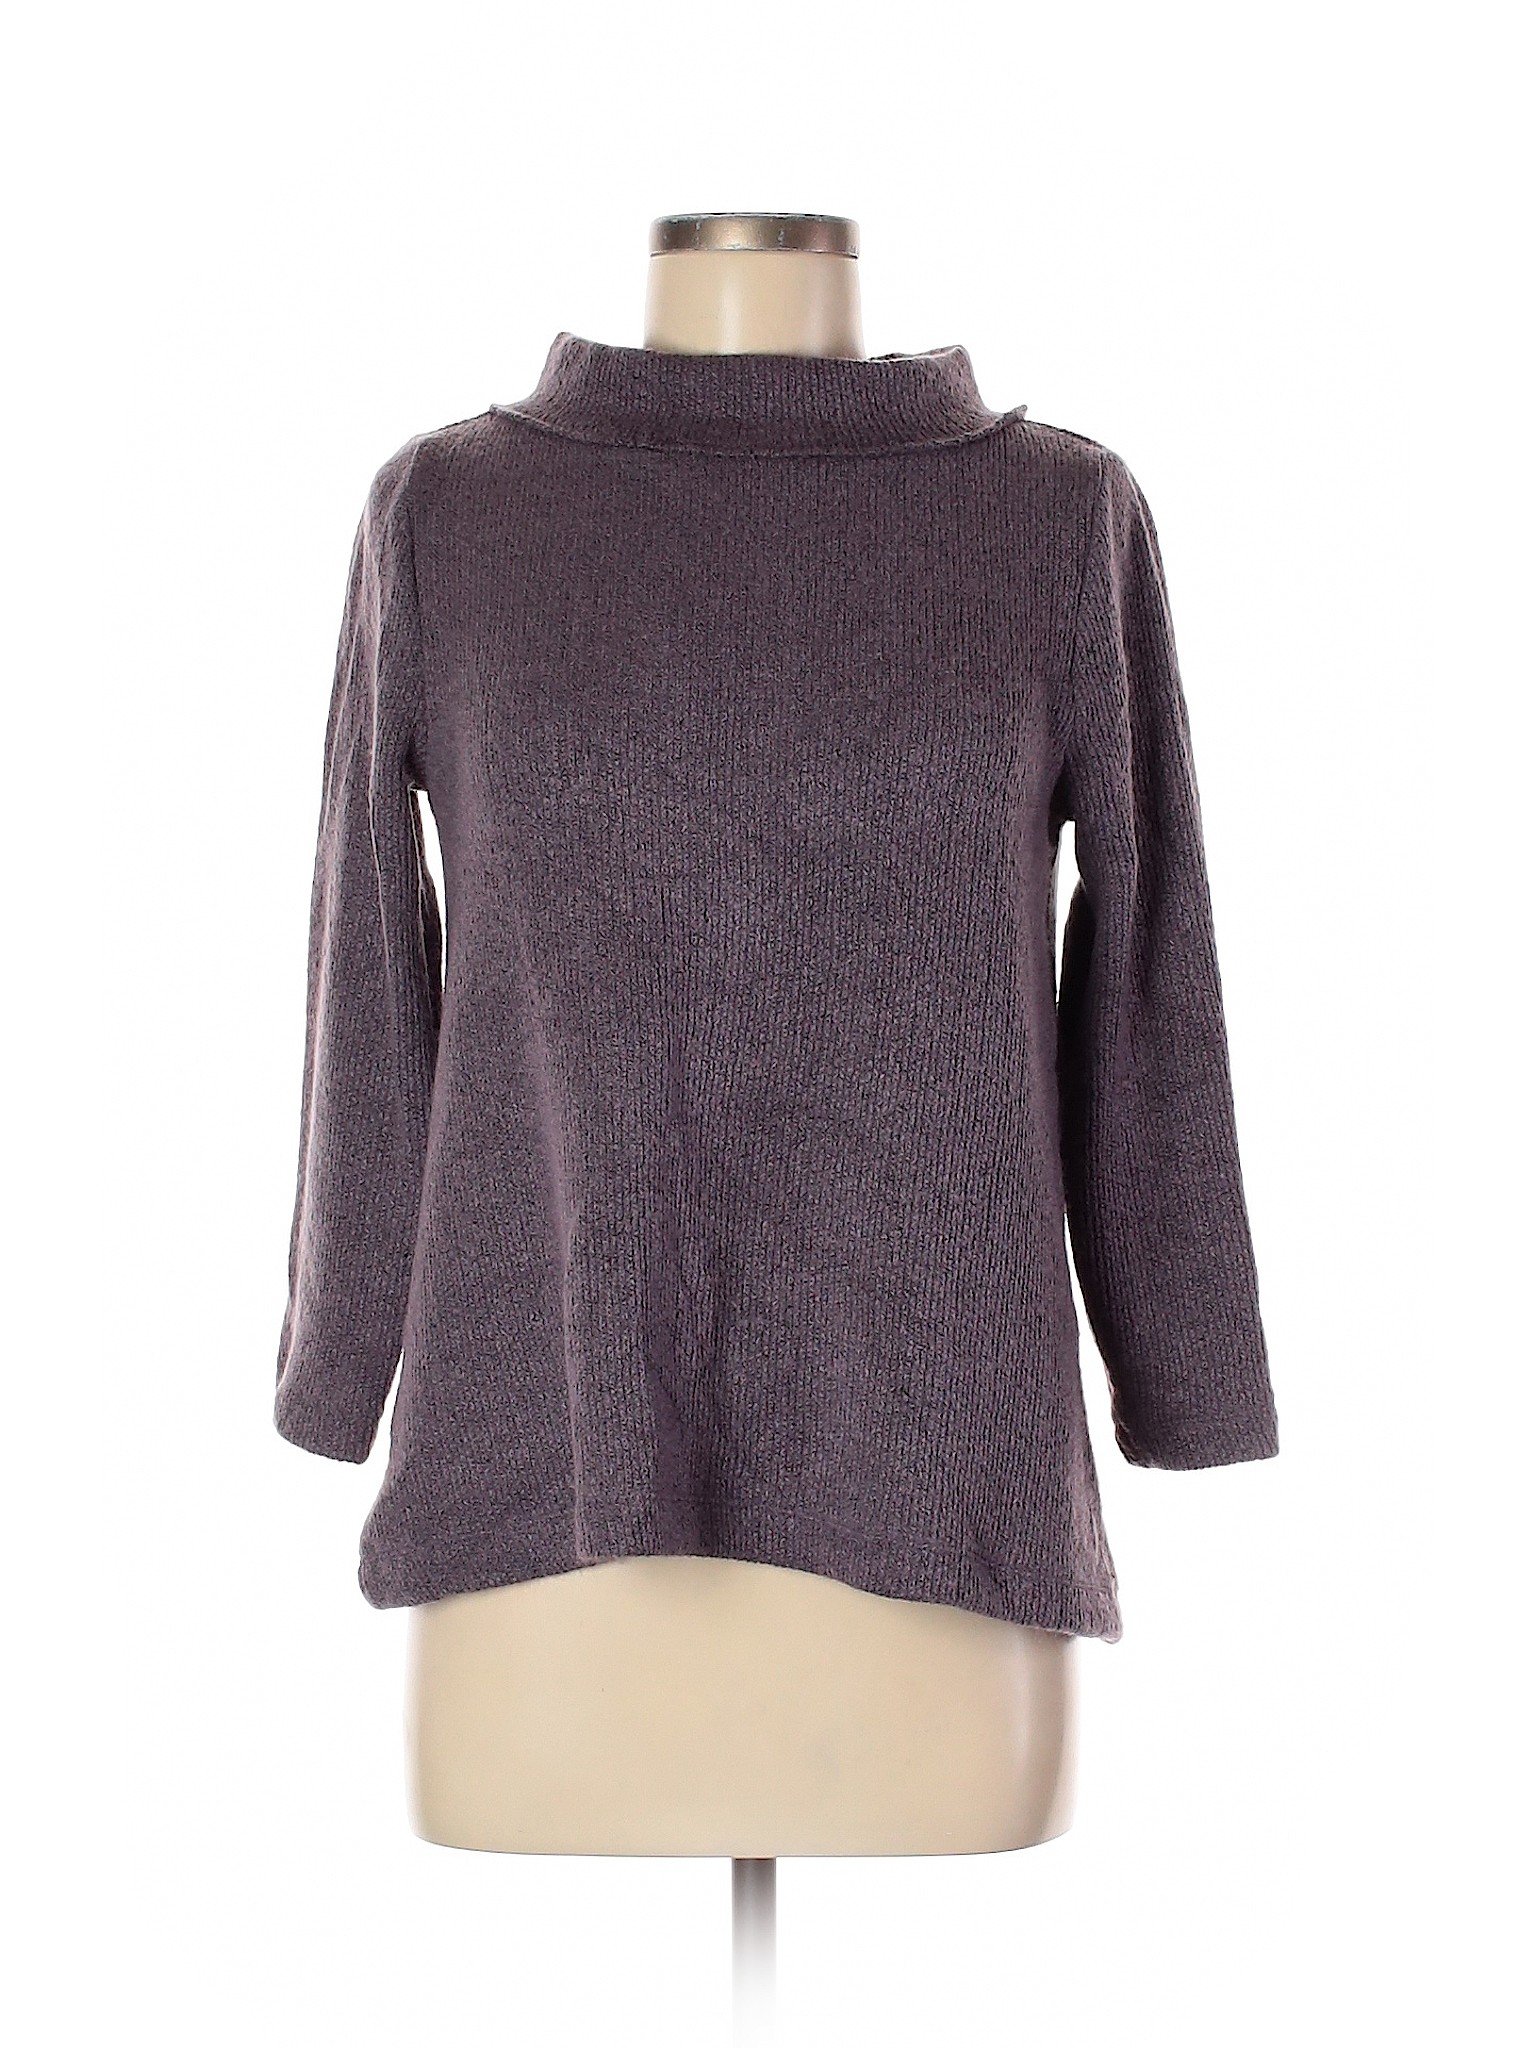 Ann Taylor LOFT Outlet Women Purple Turtleneck Sweater M | eBay